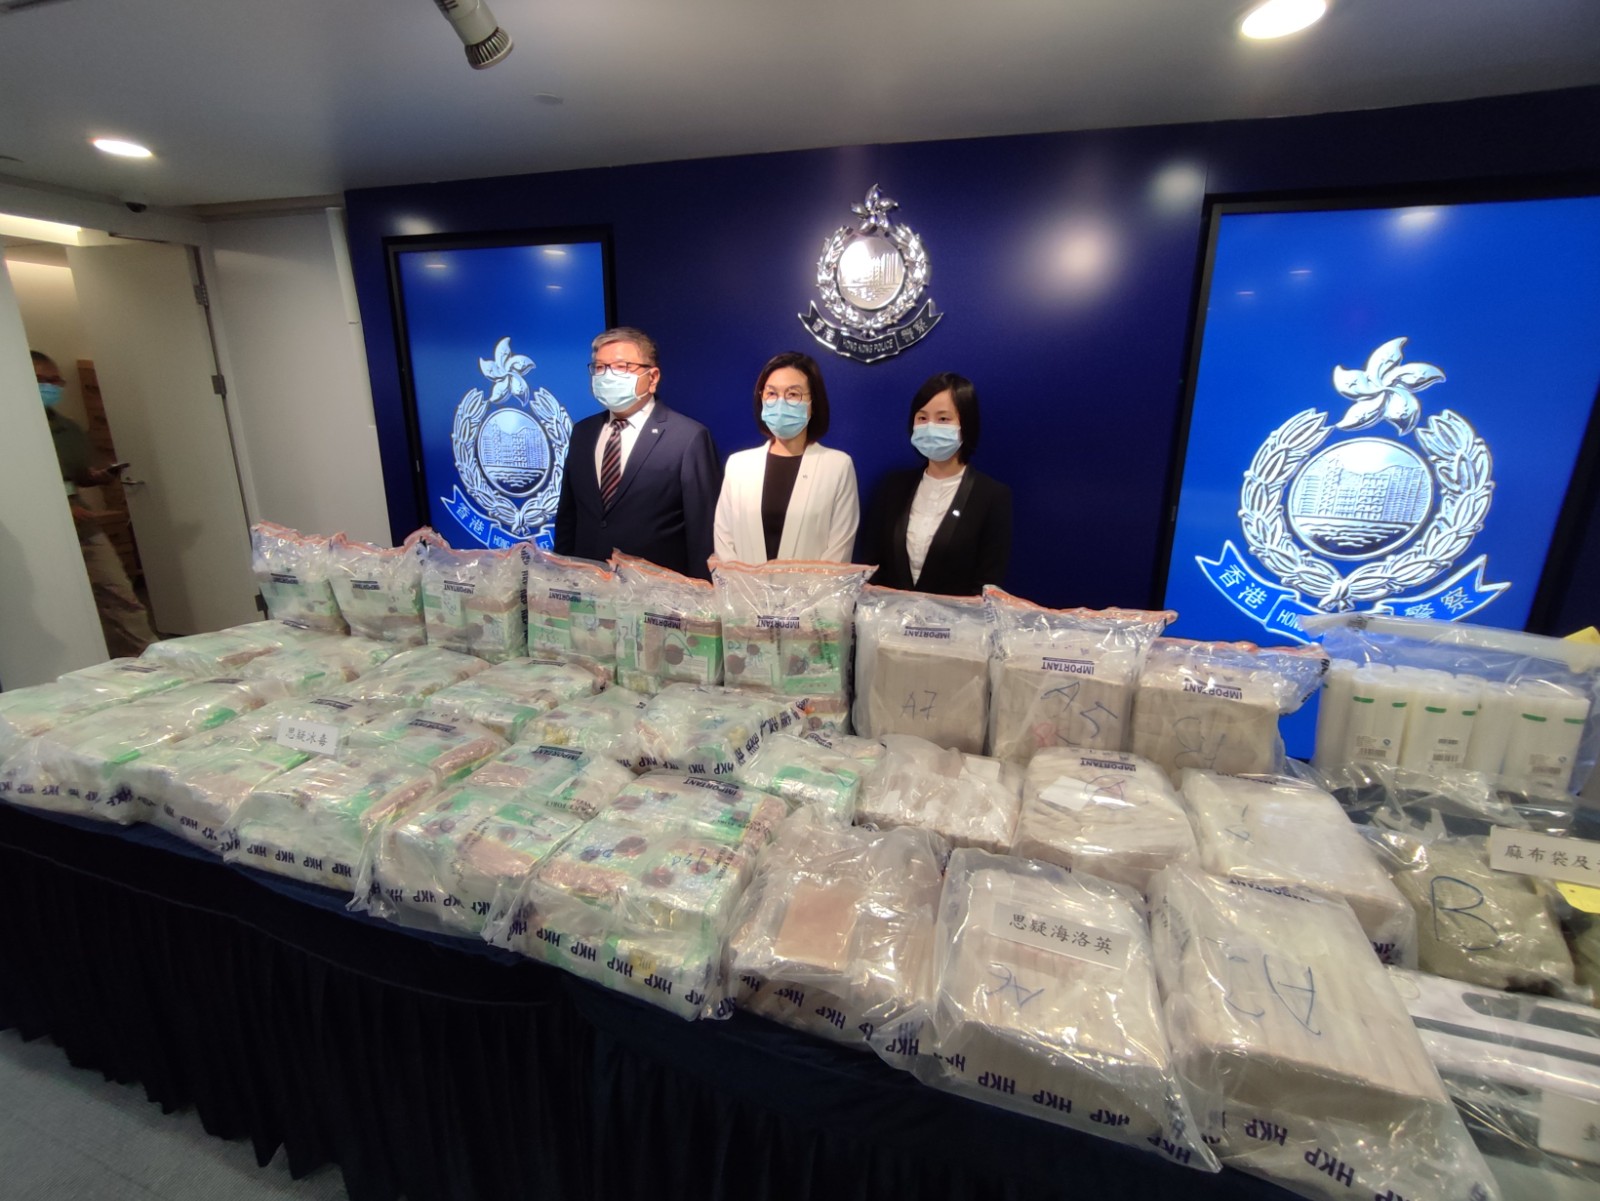 警方搗破長沙灣毒品倉庫 檢值1.95億元冰毒及海洛英